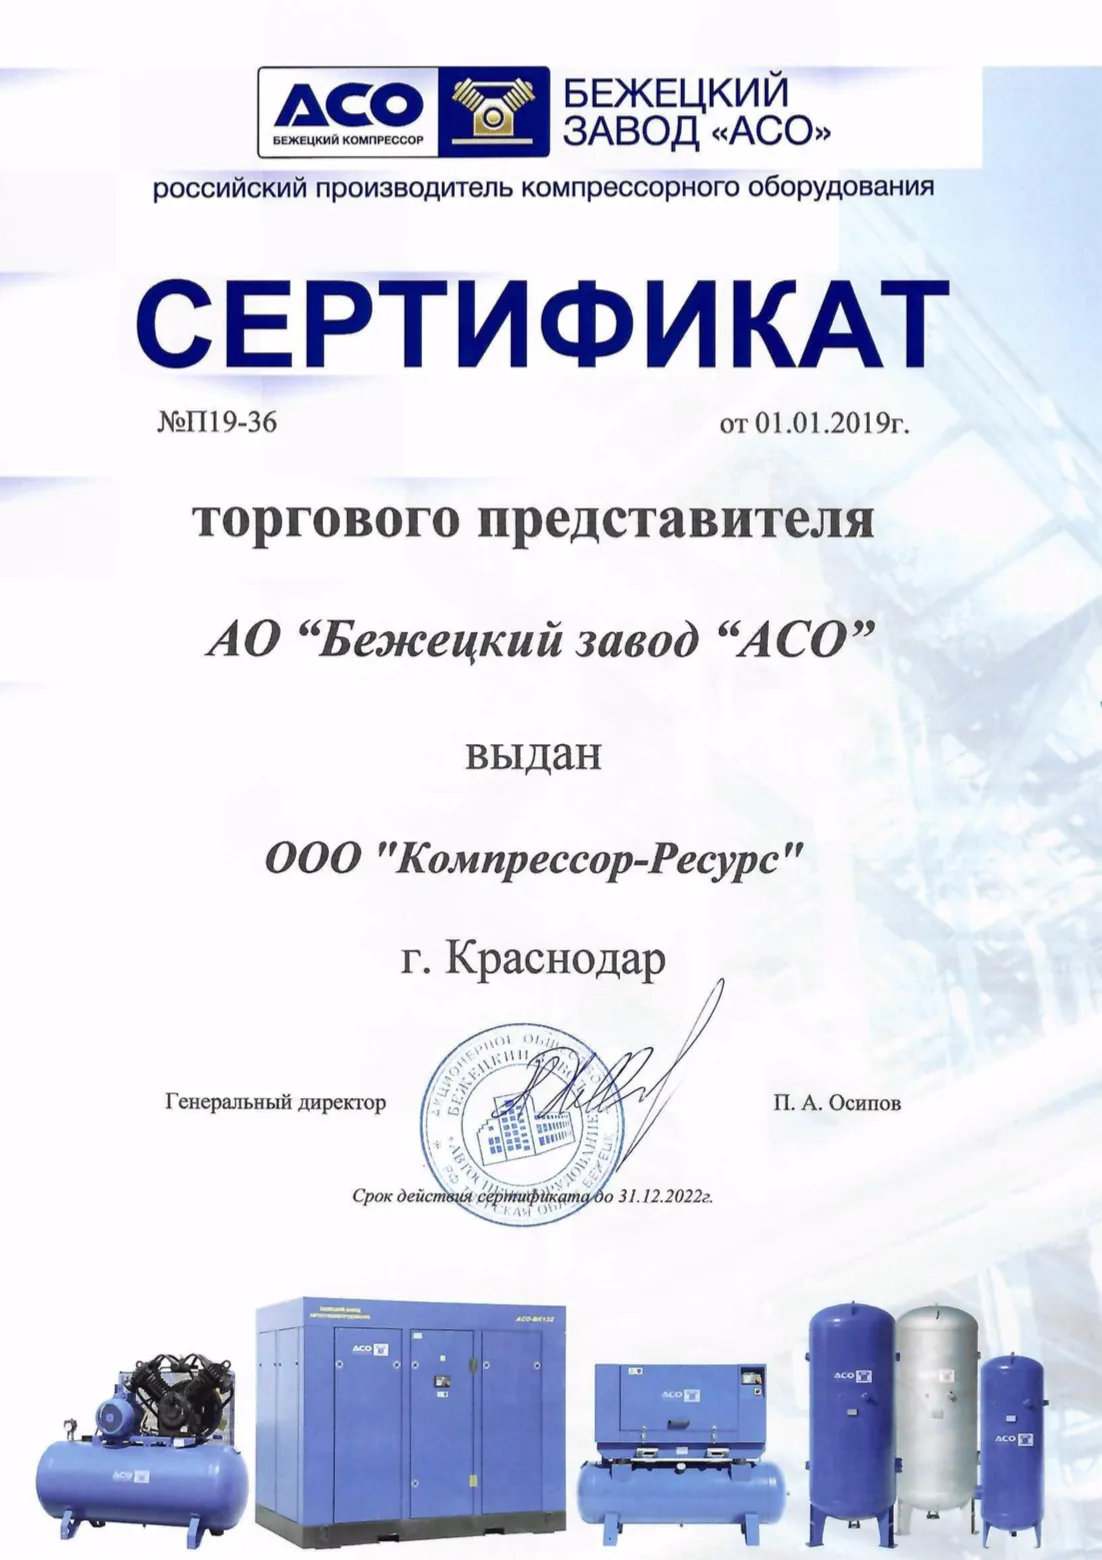 ООО "Компрессор-ресурс" является официальным представителем АСО "Бежецк"